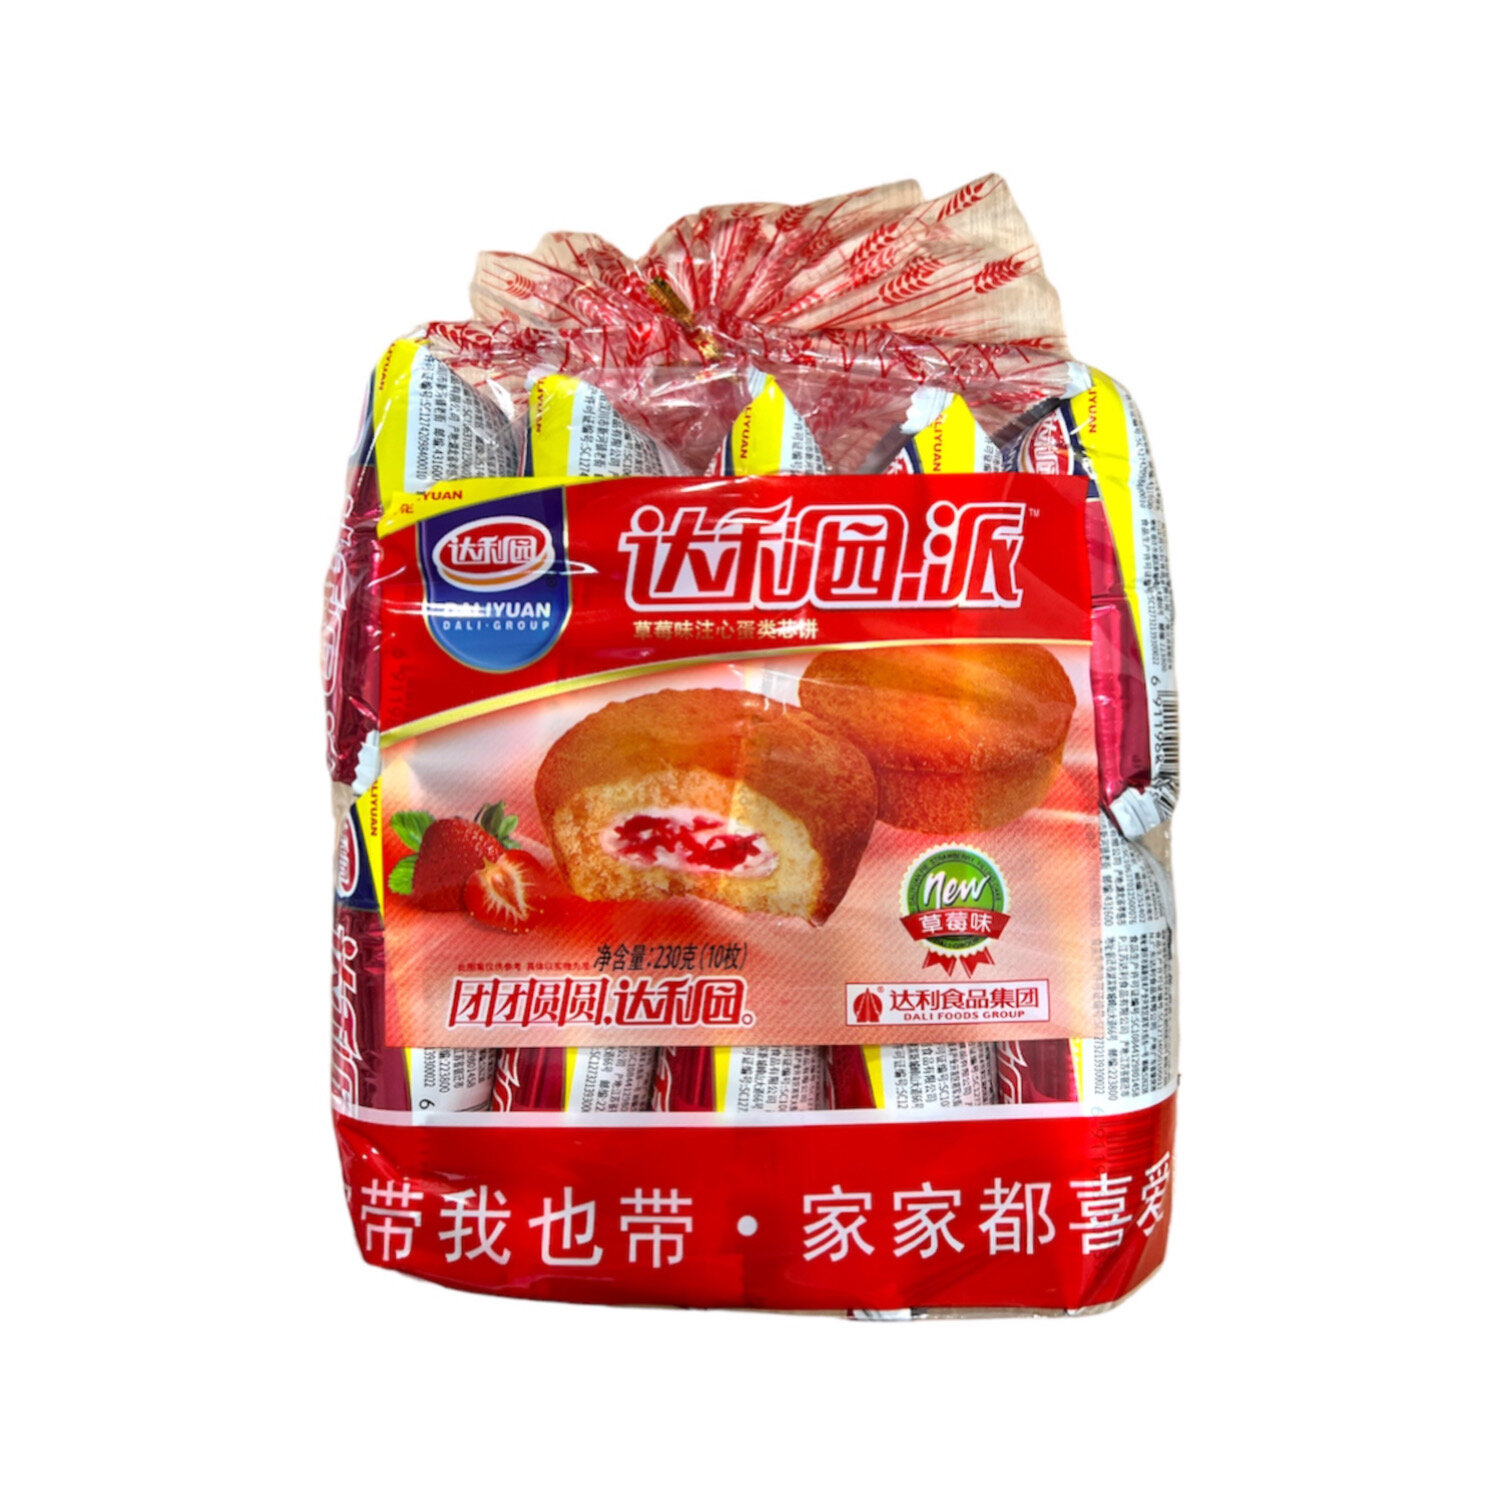 Daliyuan Pie Воздушные кексы с начинкой клубничный крем / Китайский ChocoPie, упаковка 230г / 10 шт